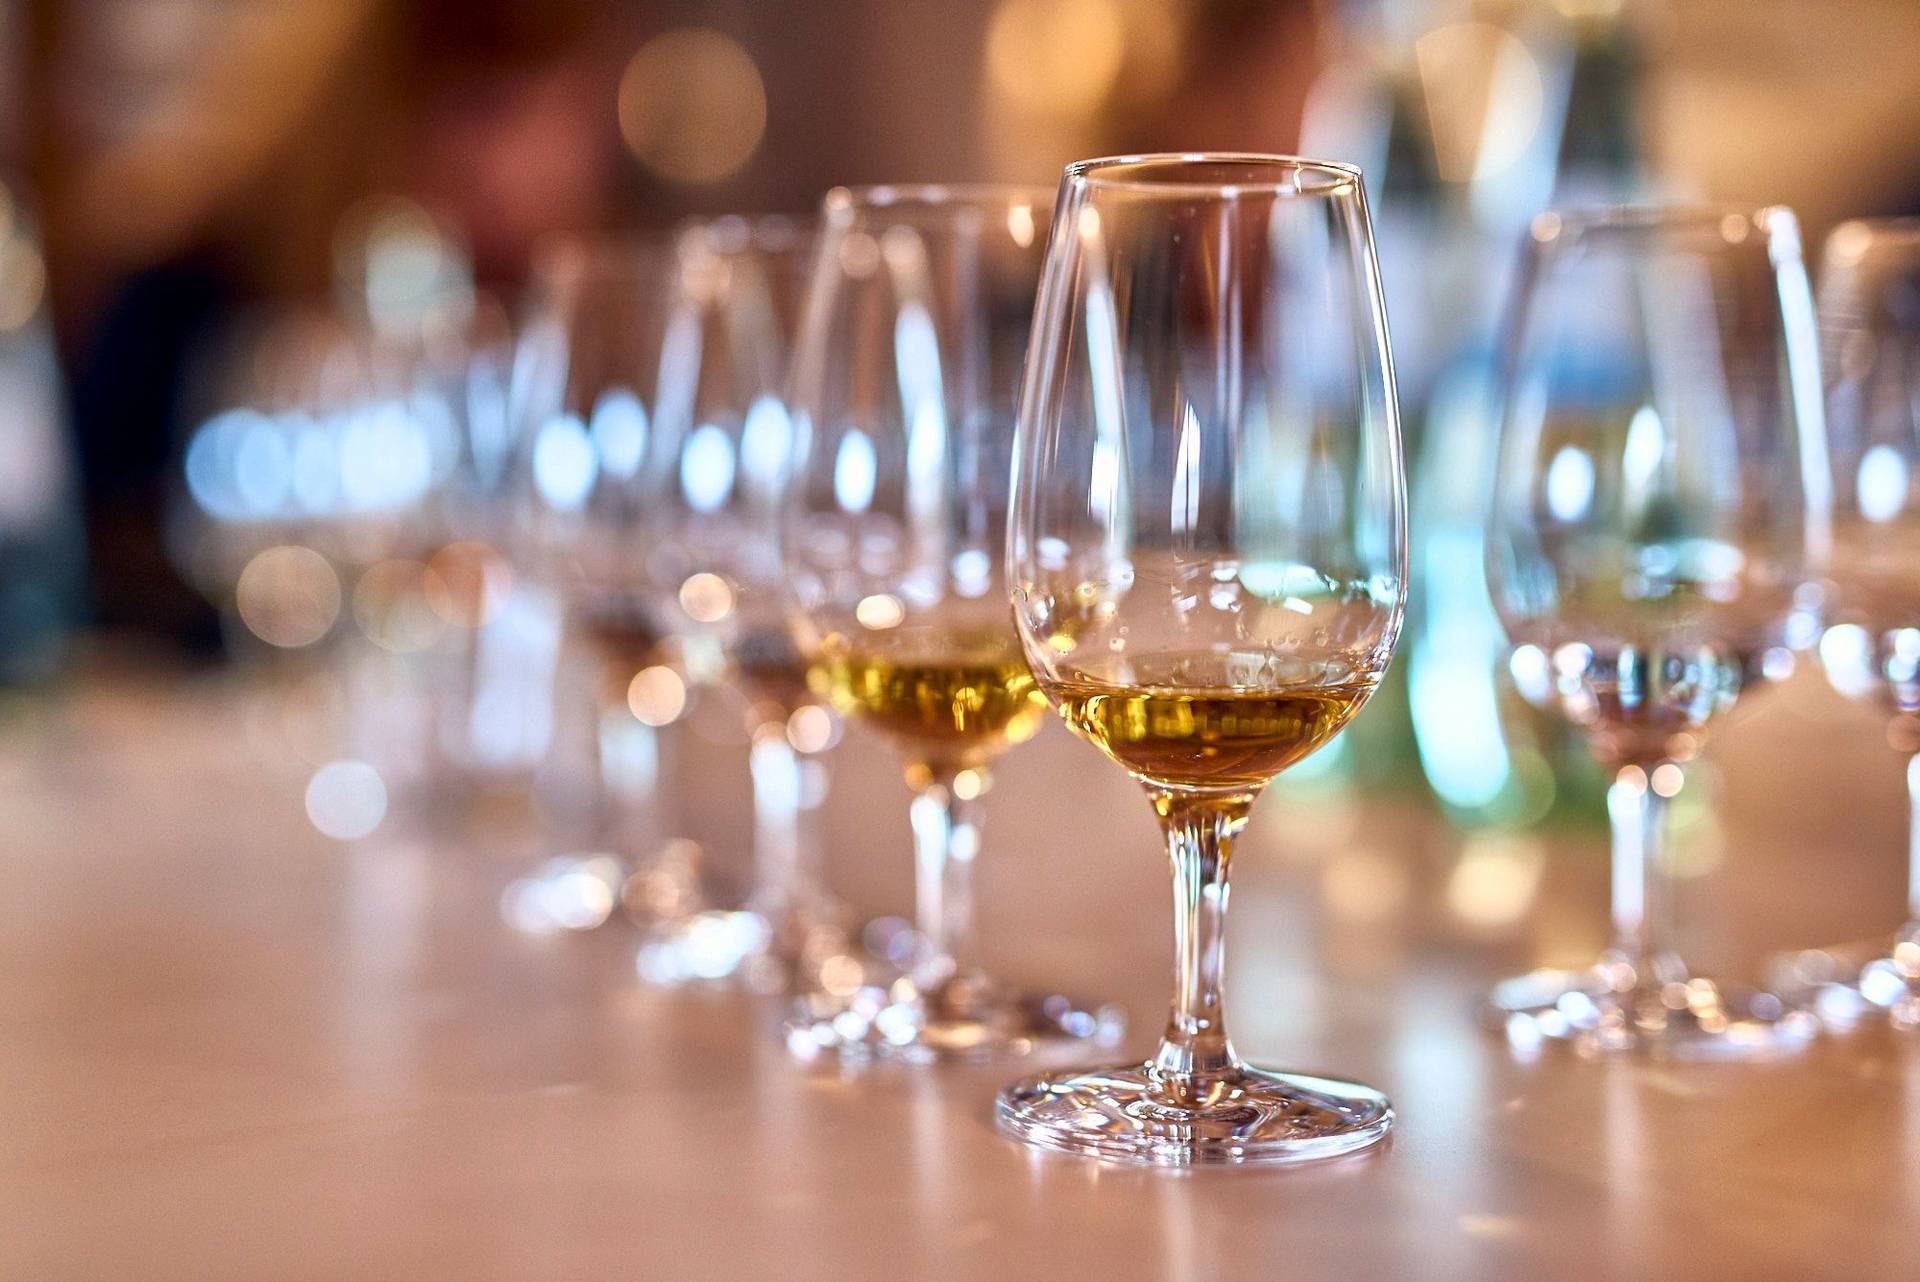 roggen whisky tasting bei den spreewood distillers von stork club in schlepzig